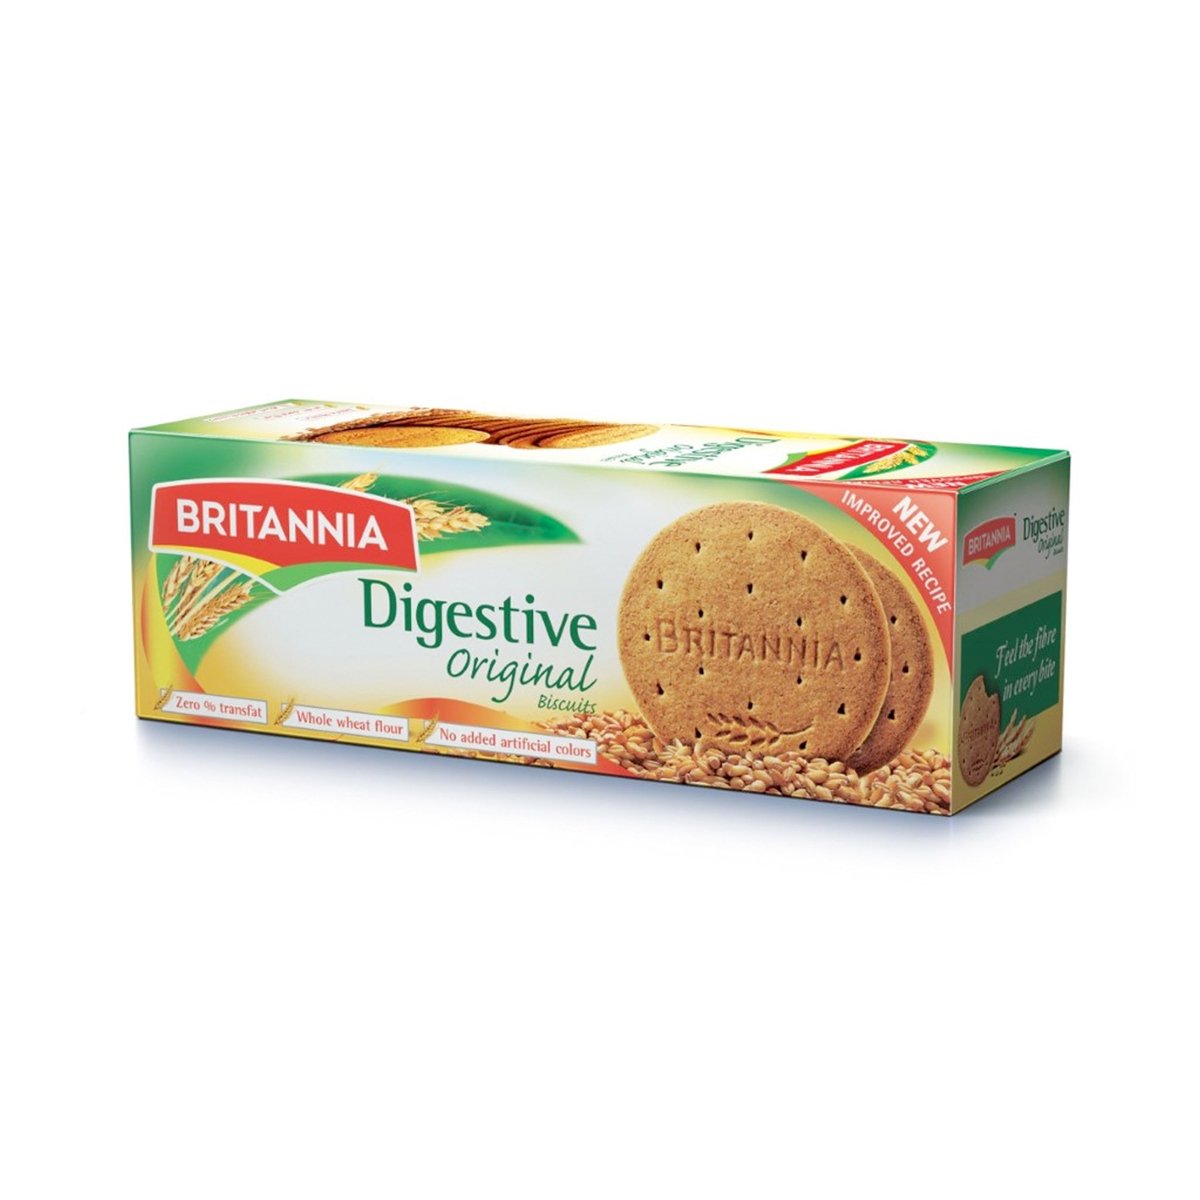 Britannia Digestive Biscuit 225g